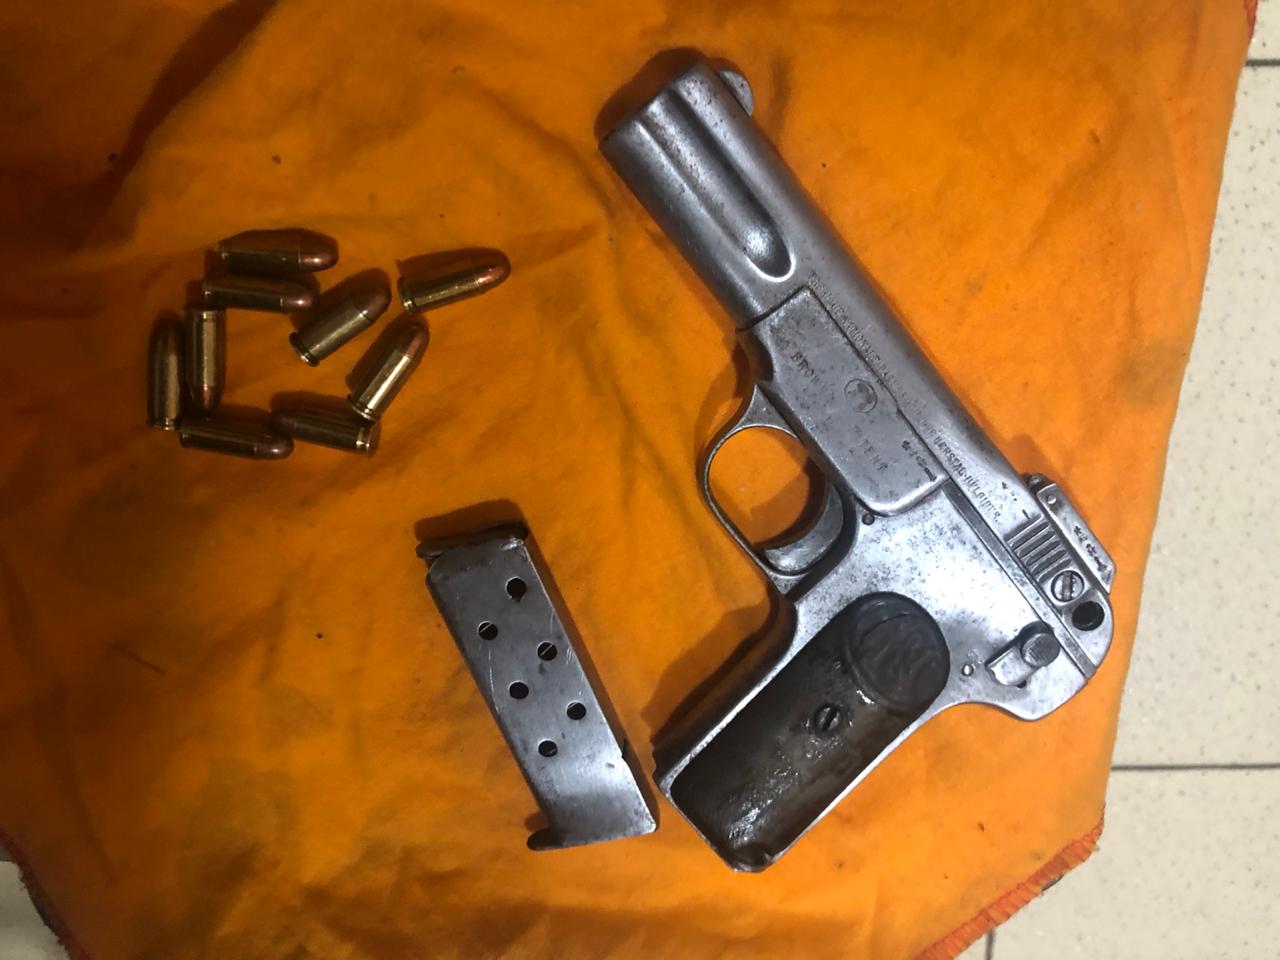 El arma incautada es una pistola de calibre 32 marca Browhin con 9 municiones. Foto: MInisterio de Justicia.